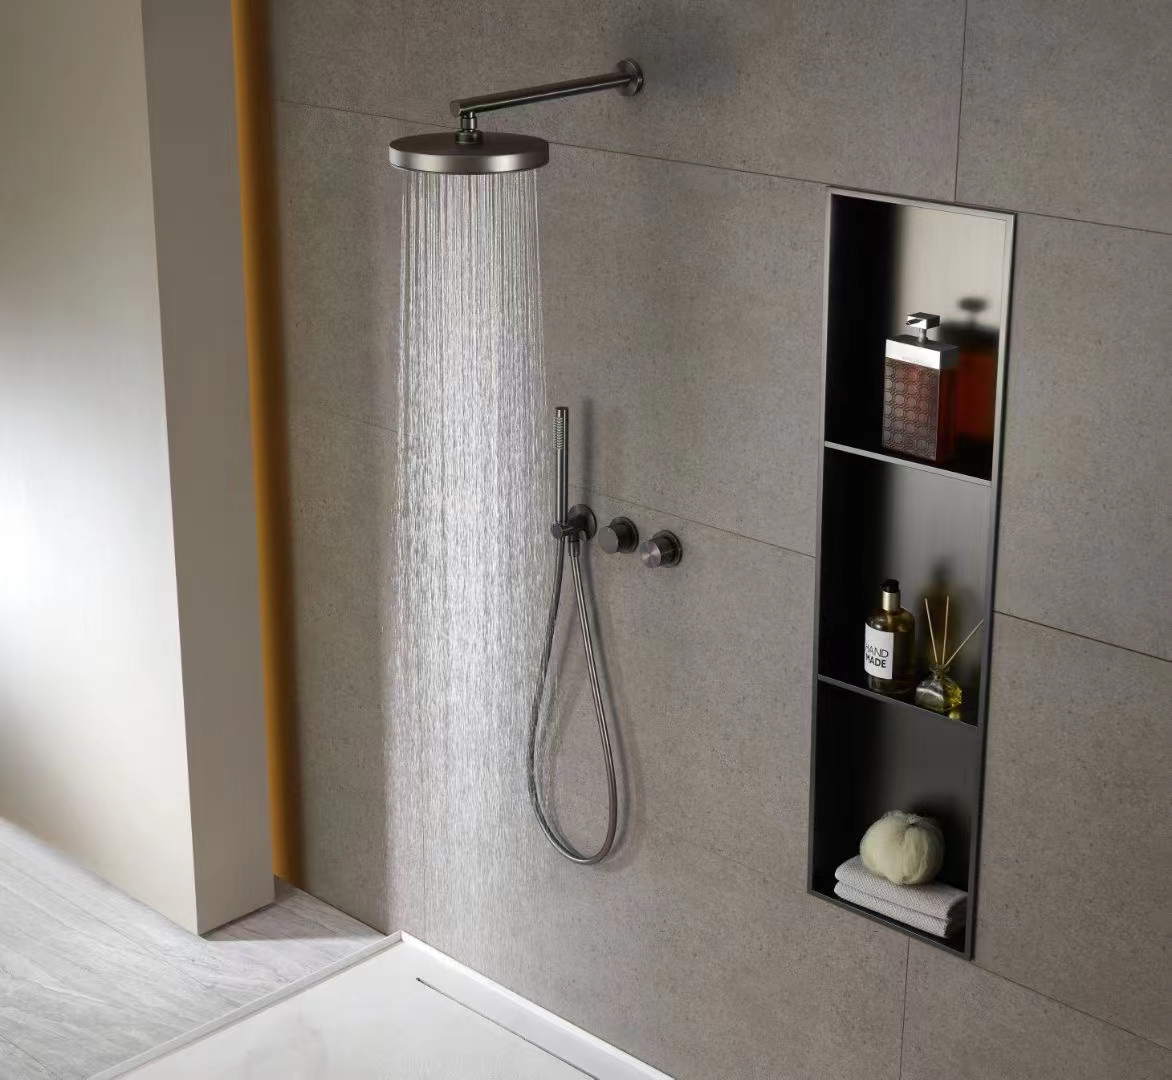 Brushed Gun metal Shower set 📷 #brushed #gunmetal #shower #bath #bathroom #home #design #construction #project #interior